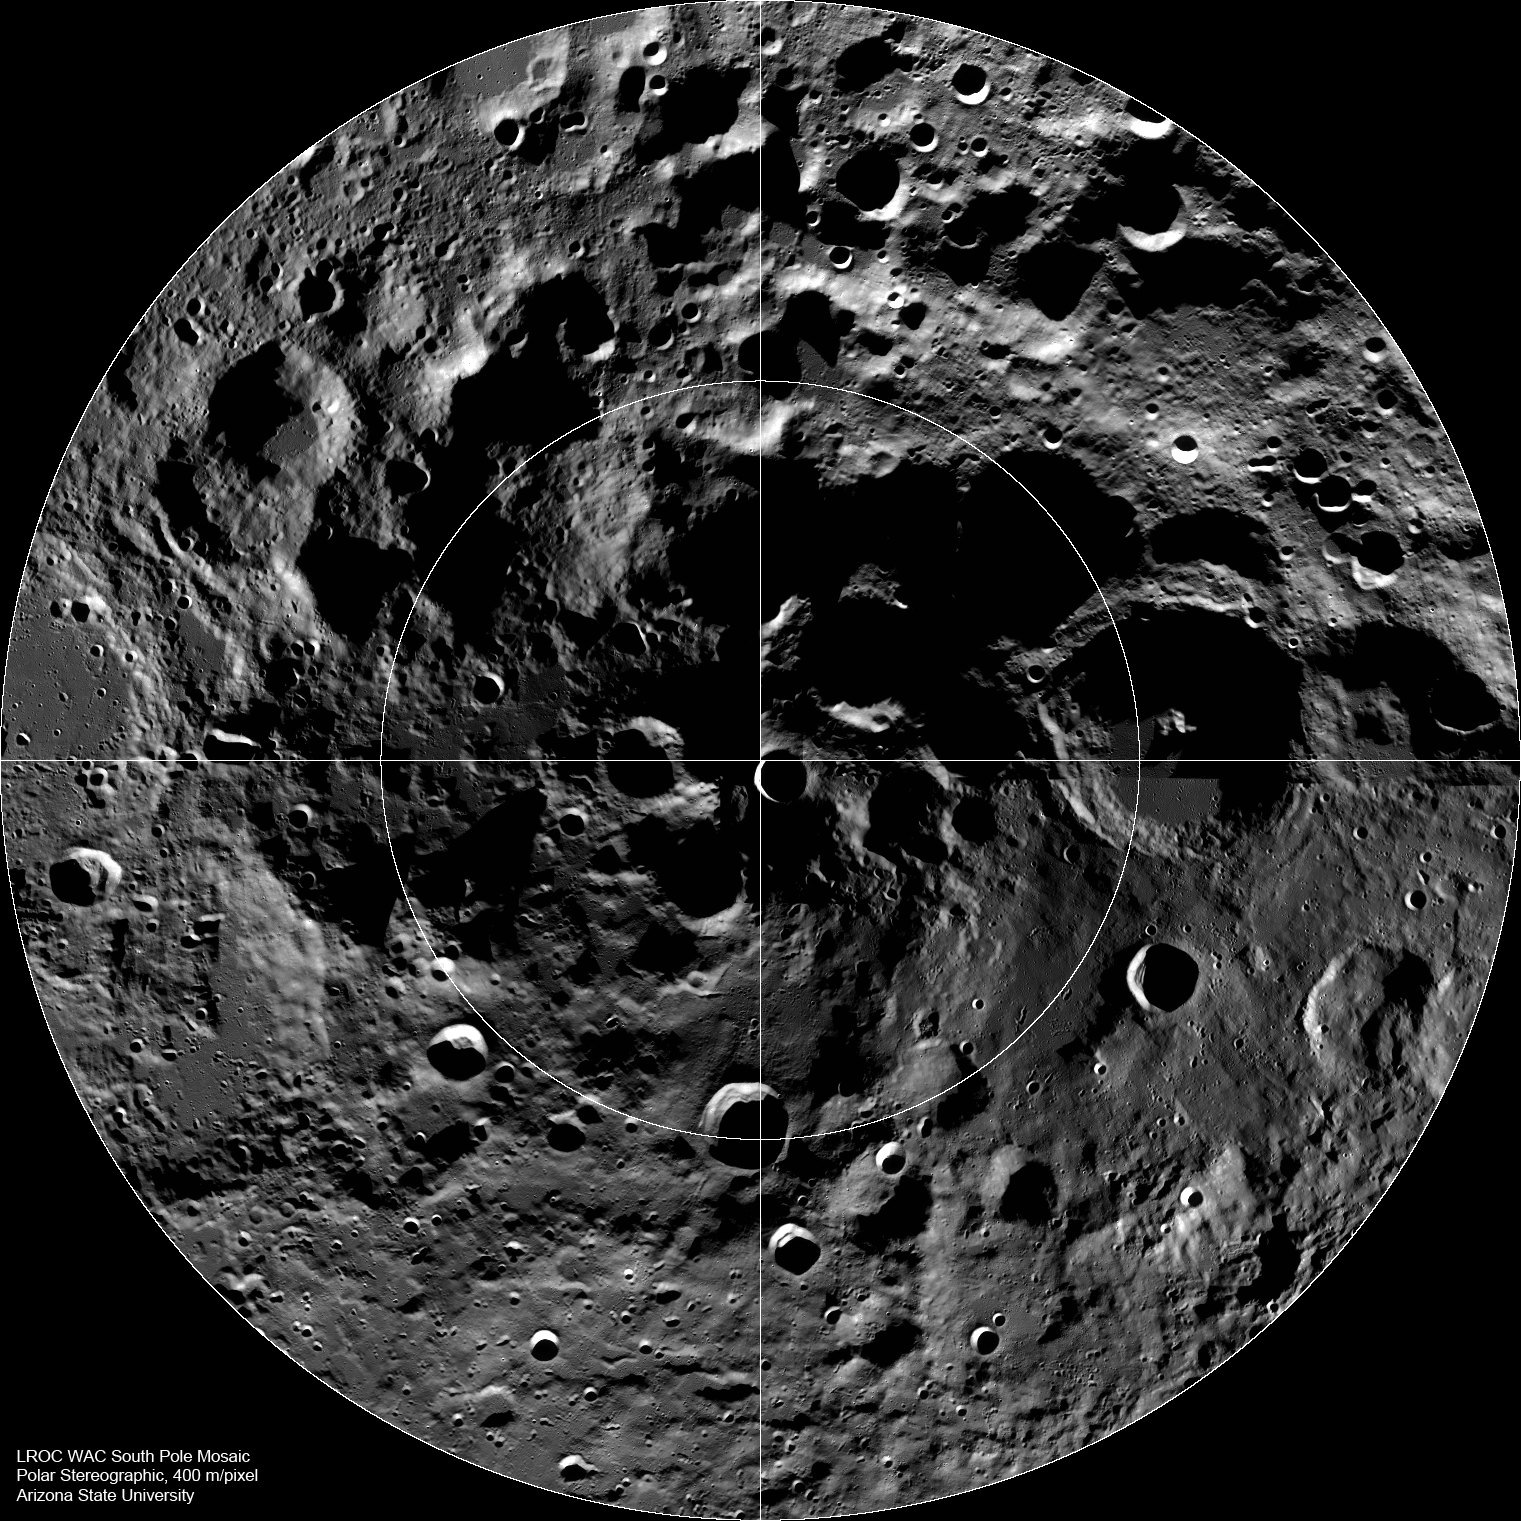 चंद्र दक्षिणी ध्रुव पूरे सौर मंडल में सबसे सम्मोहक स्थानों में से एक है।  यह मोज़ेक नासा के लूनर रिकोनिसेंस ऑर्बिटर पर लगे वाइड एरिया कैमरा से लिया गया है।